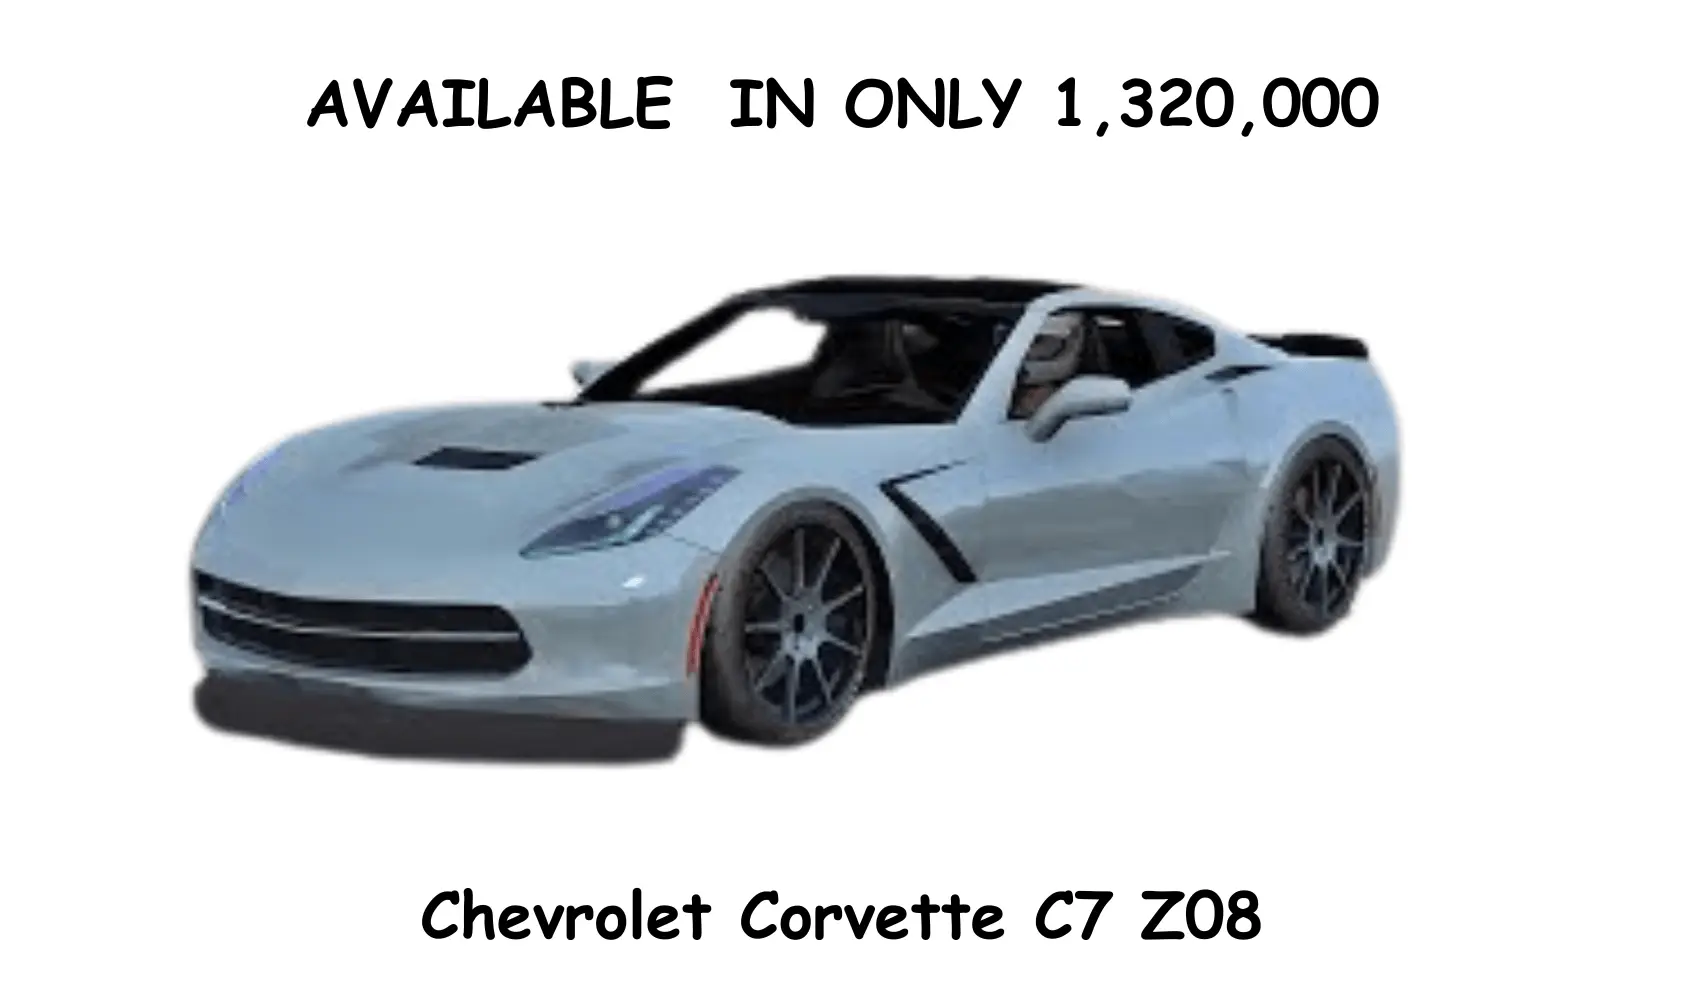 Chevrolet Corvette C7 Z08 PRICE IN CAR PARKING MULTIPLAYER